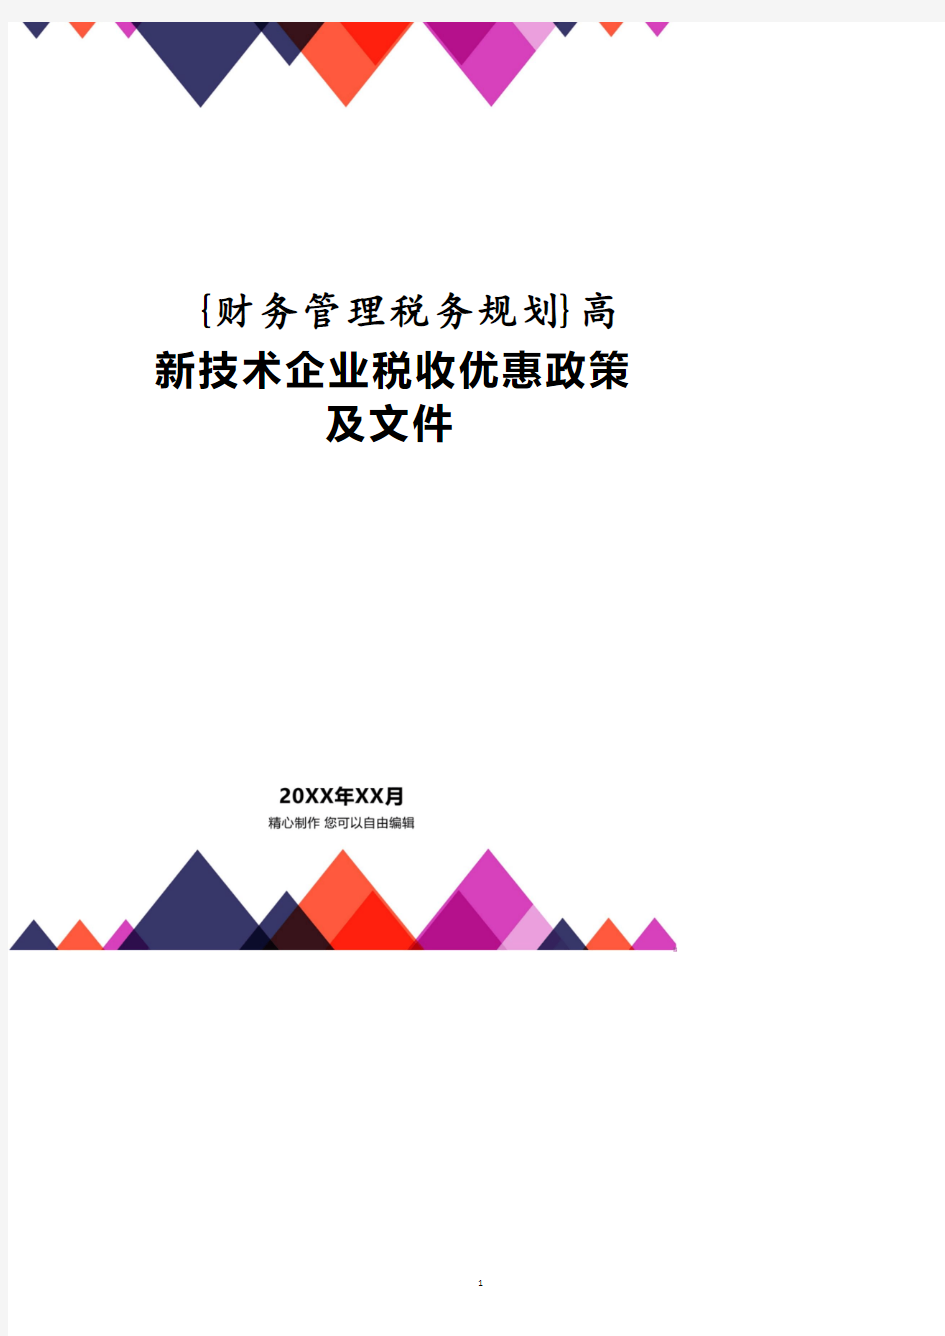 高新技术企业税收优惠政策及文件.pdf